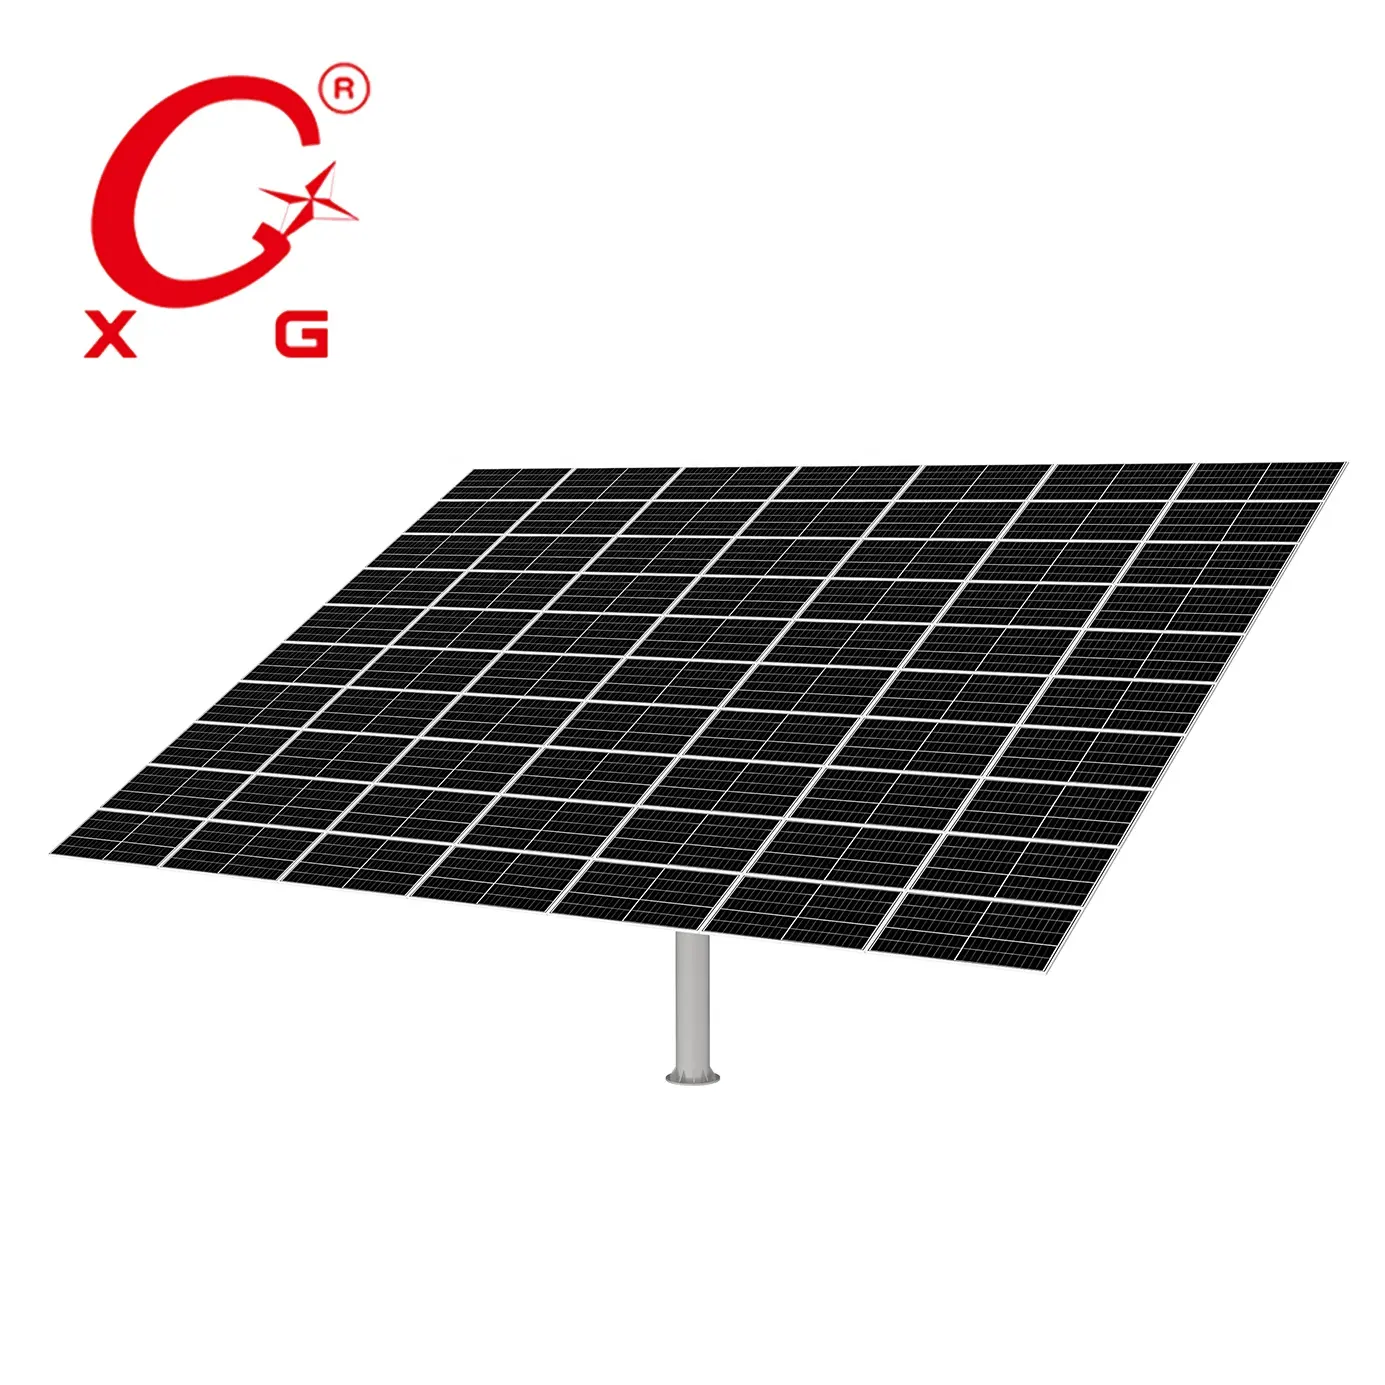 Dual Axis off-lưới năng lượng mặt trời hệ thống theo dõi 10KW không dây wifi 4 gam Tracker năng lượng mặt trời năng lượng sạch nhà năng lượng mặt trời thế hệ T24